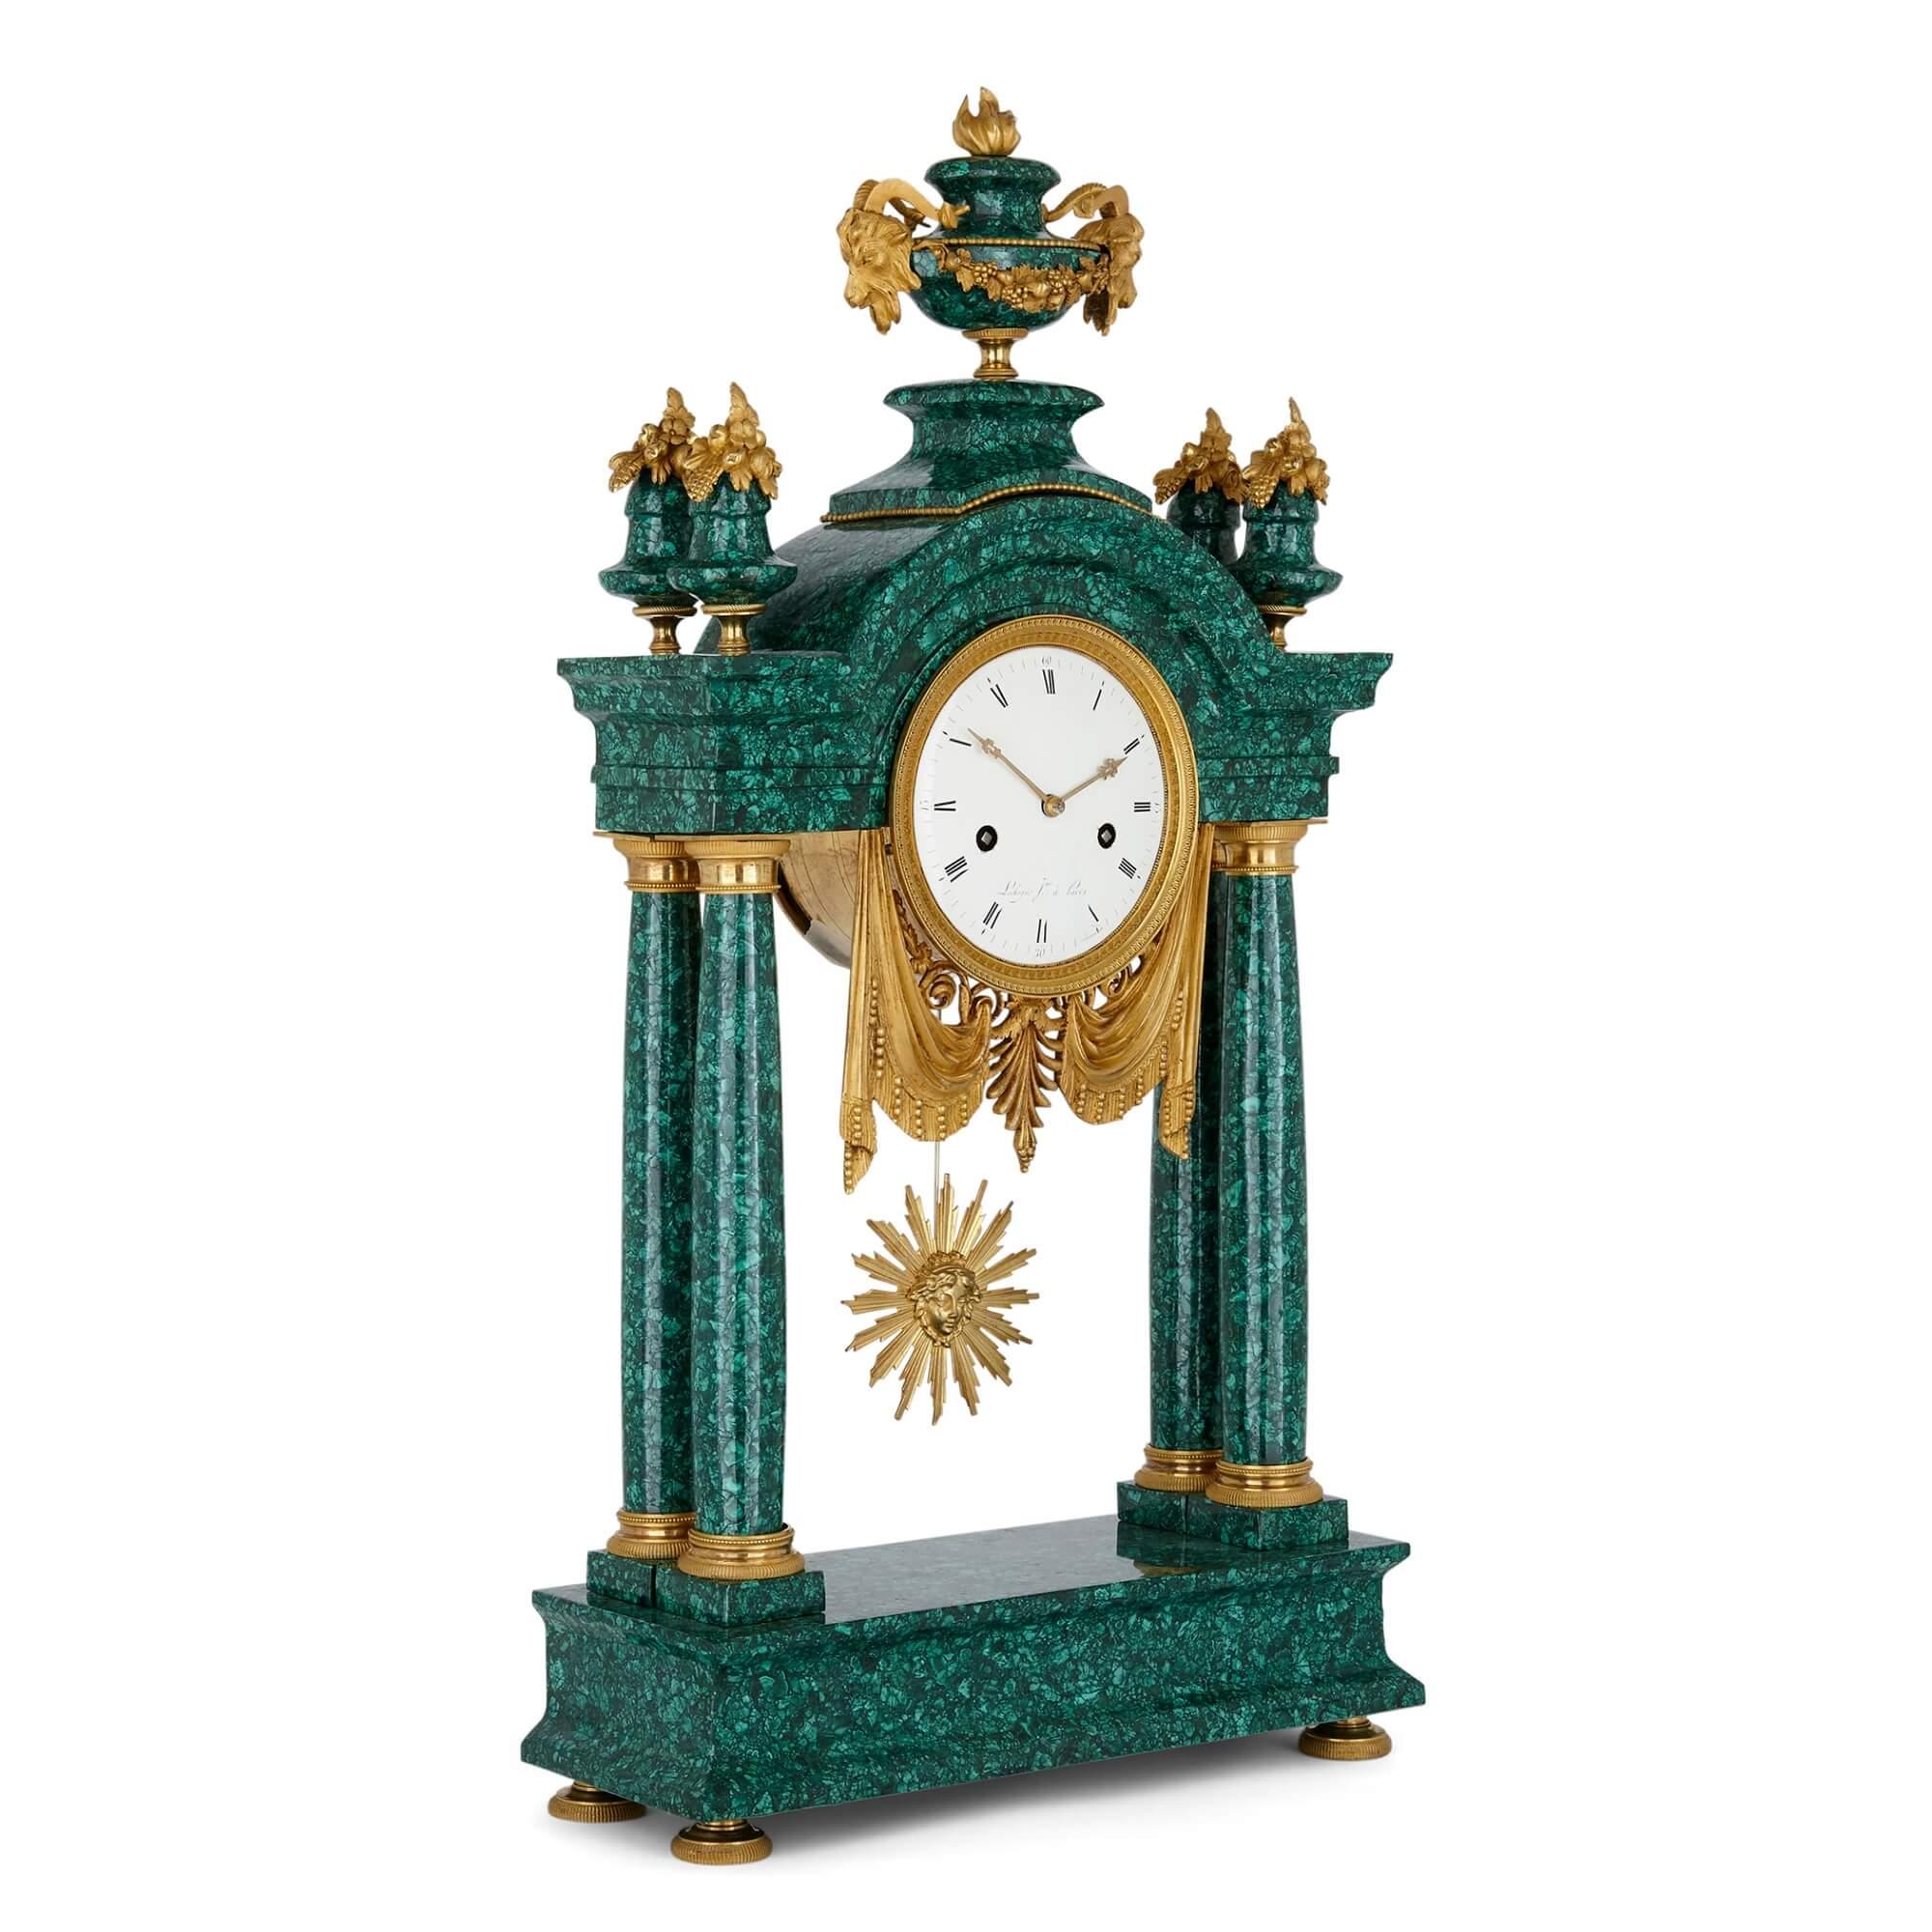 Louis-XVI-Uhr aus vergoldeter Bronze und Malachit
Französisch, Ende 18. Jahrhundert
Maße: Höhe 69cm, Breite 36cm, Tiefe 13,5cm

Diese schöne Louis-XVI-Simsuhr ist aus Malachit und vergoldeter Bronze gefertigt. Das Malachitfurnier ist eine